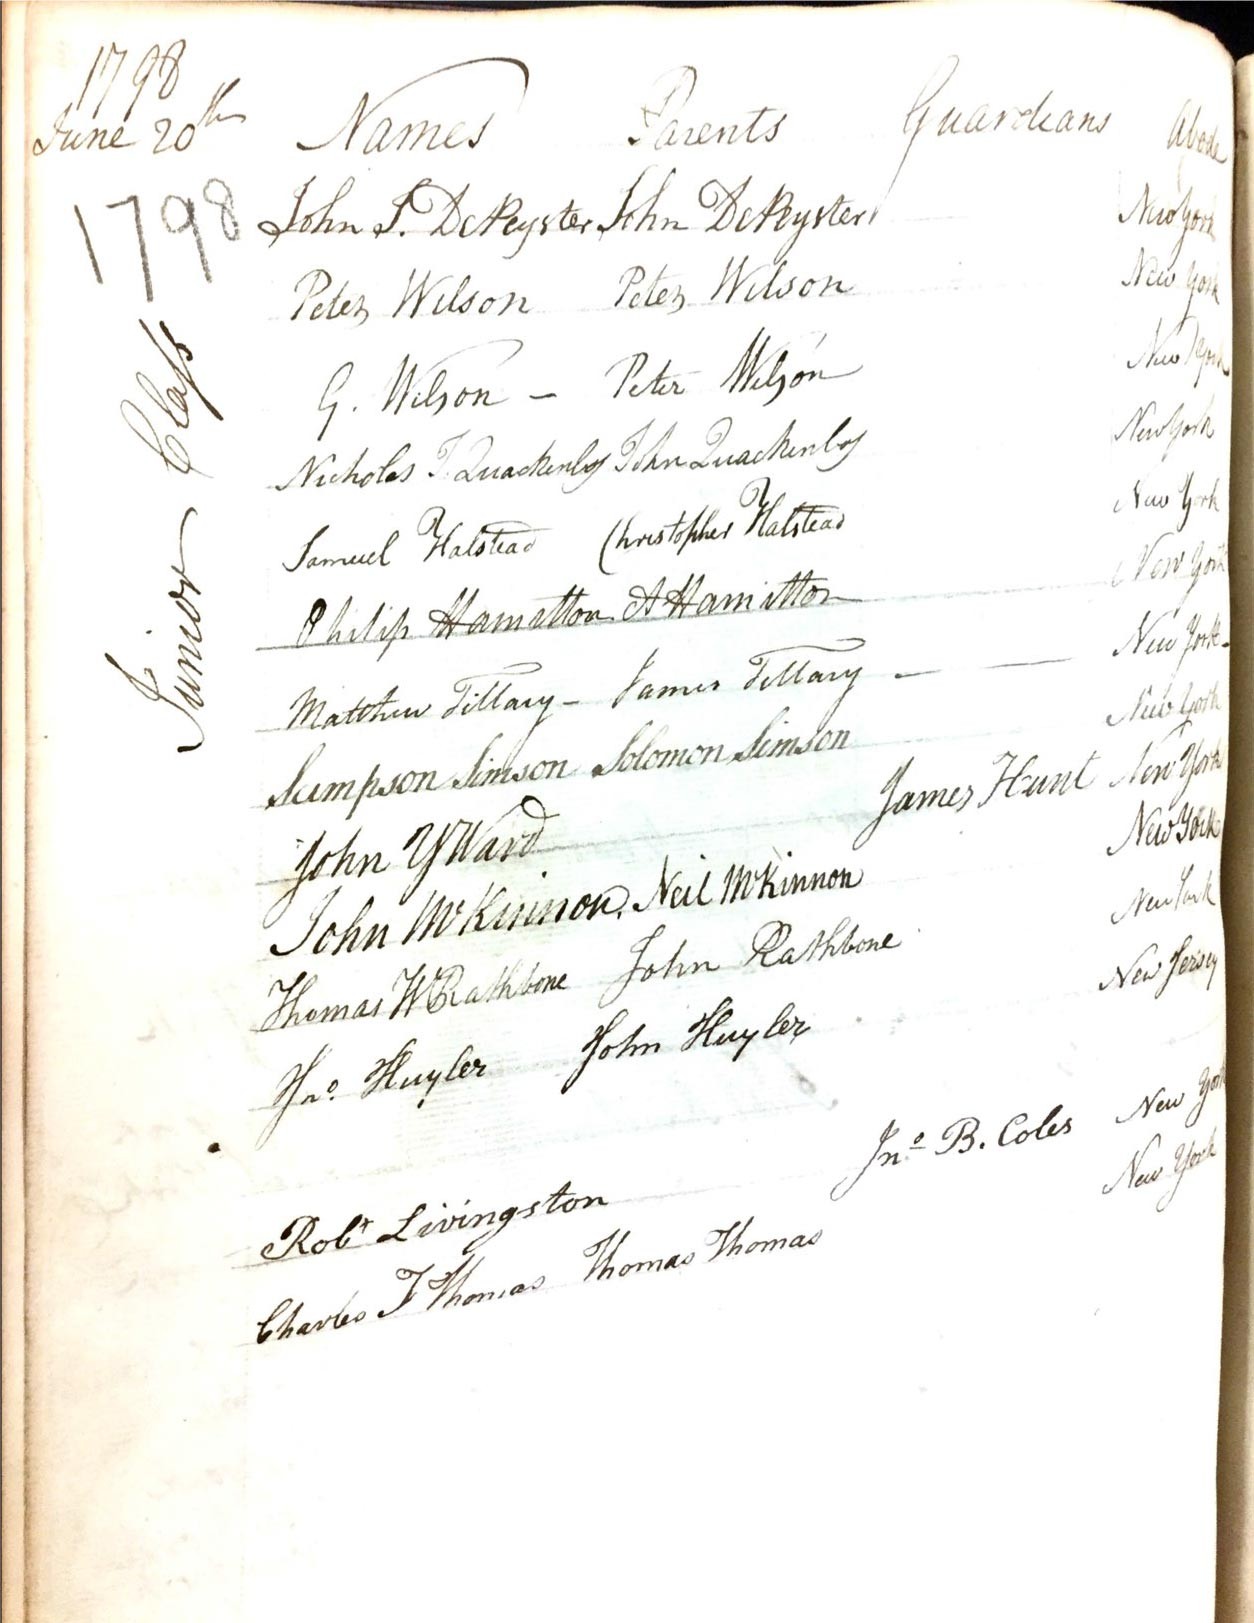 A handwritten list of items